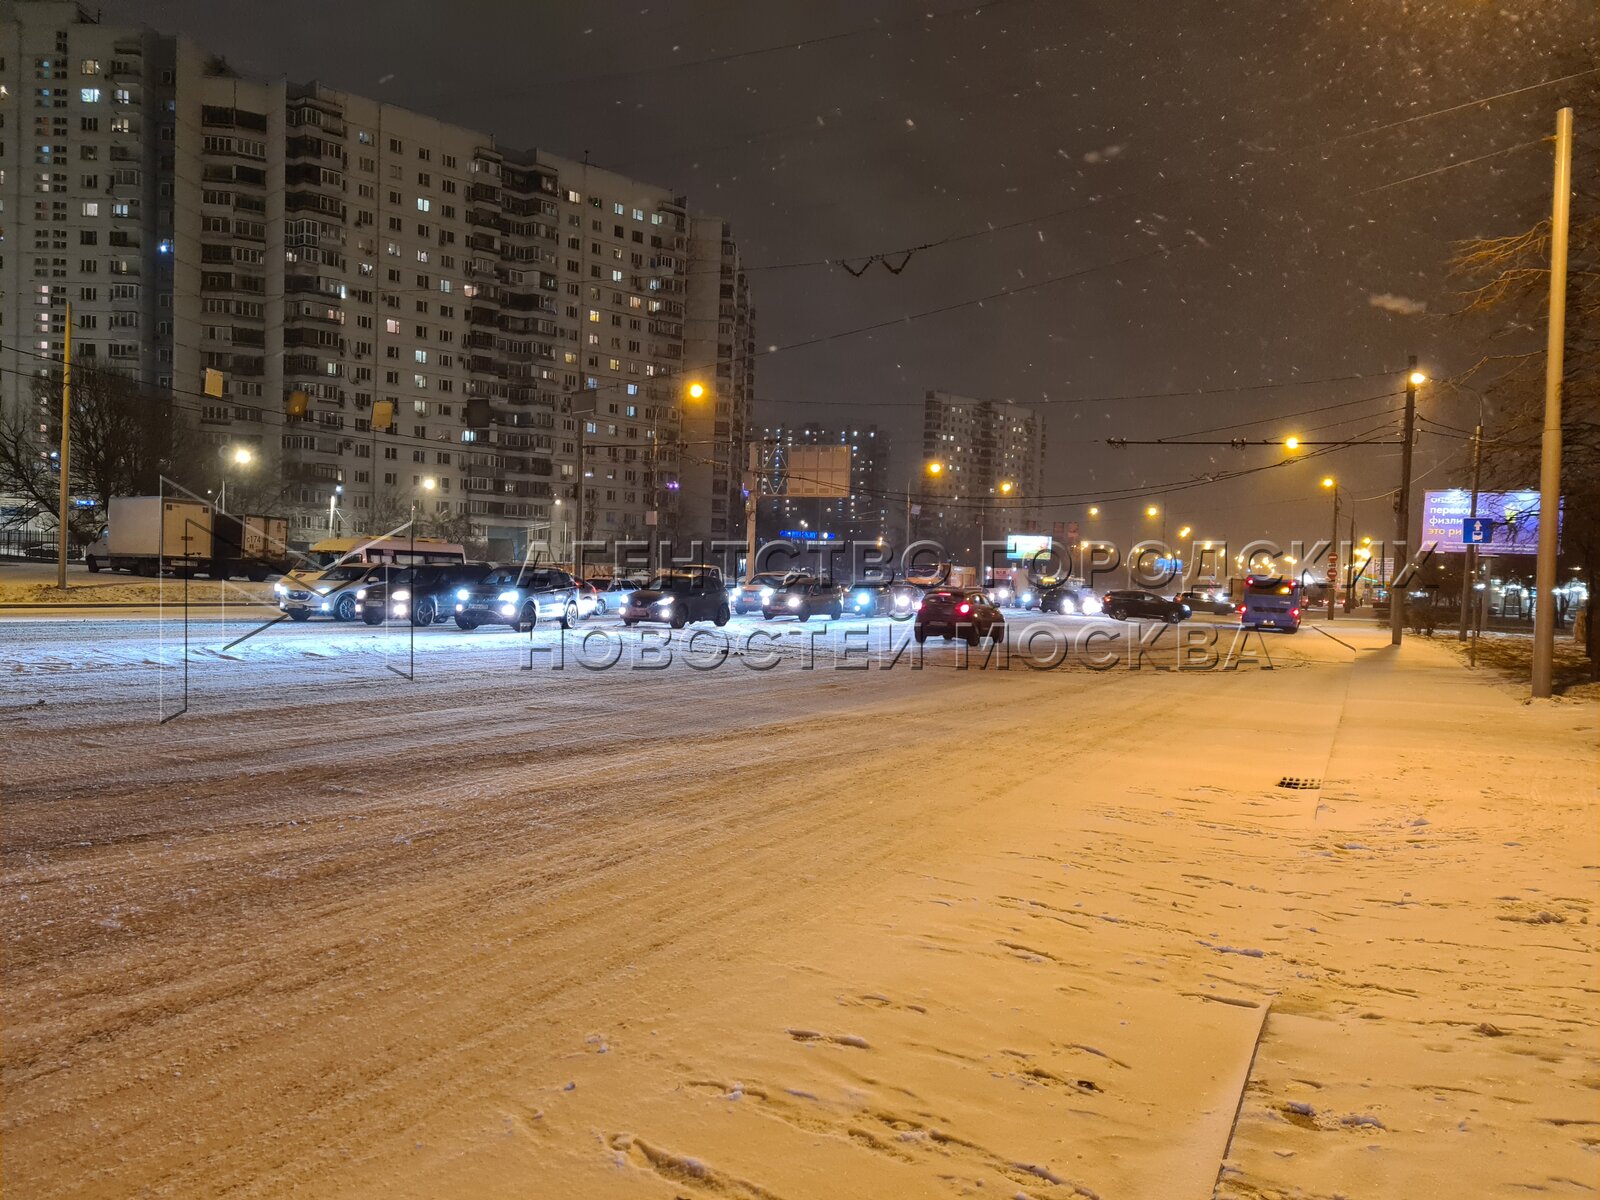 Пятница ночь погода. Снегопад в Москве. Снег в городе. Снегопад Москва вечер. Зимний снегопад в Москве вечером.